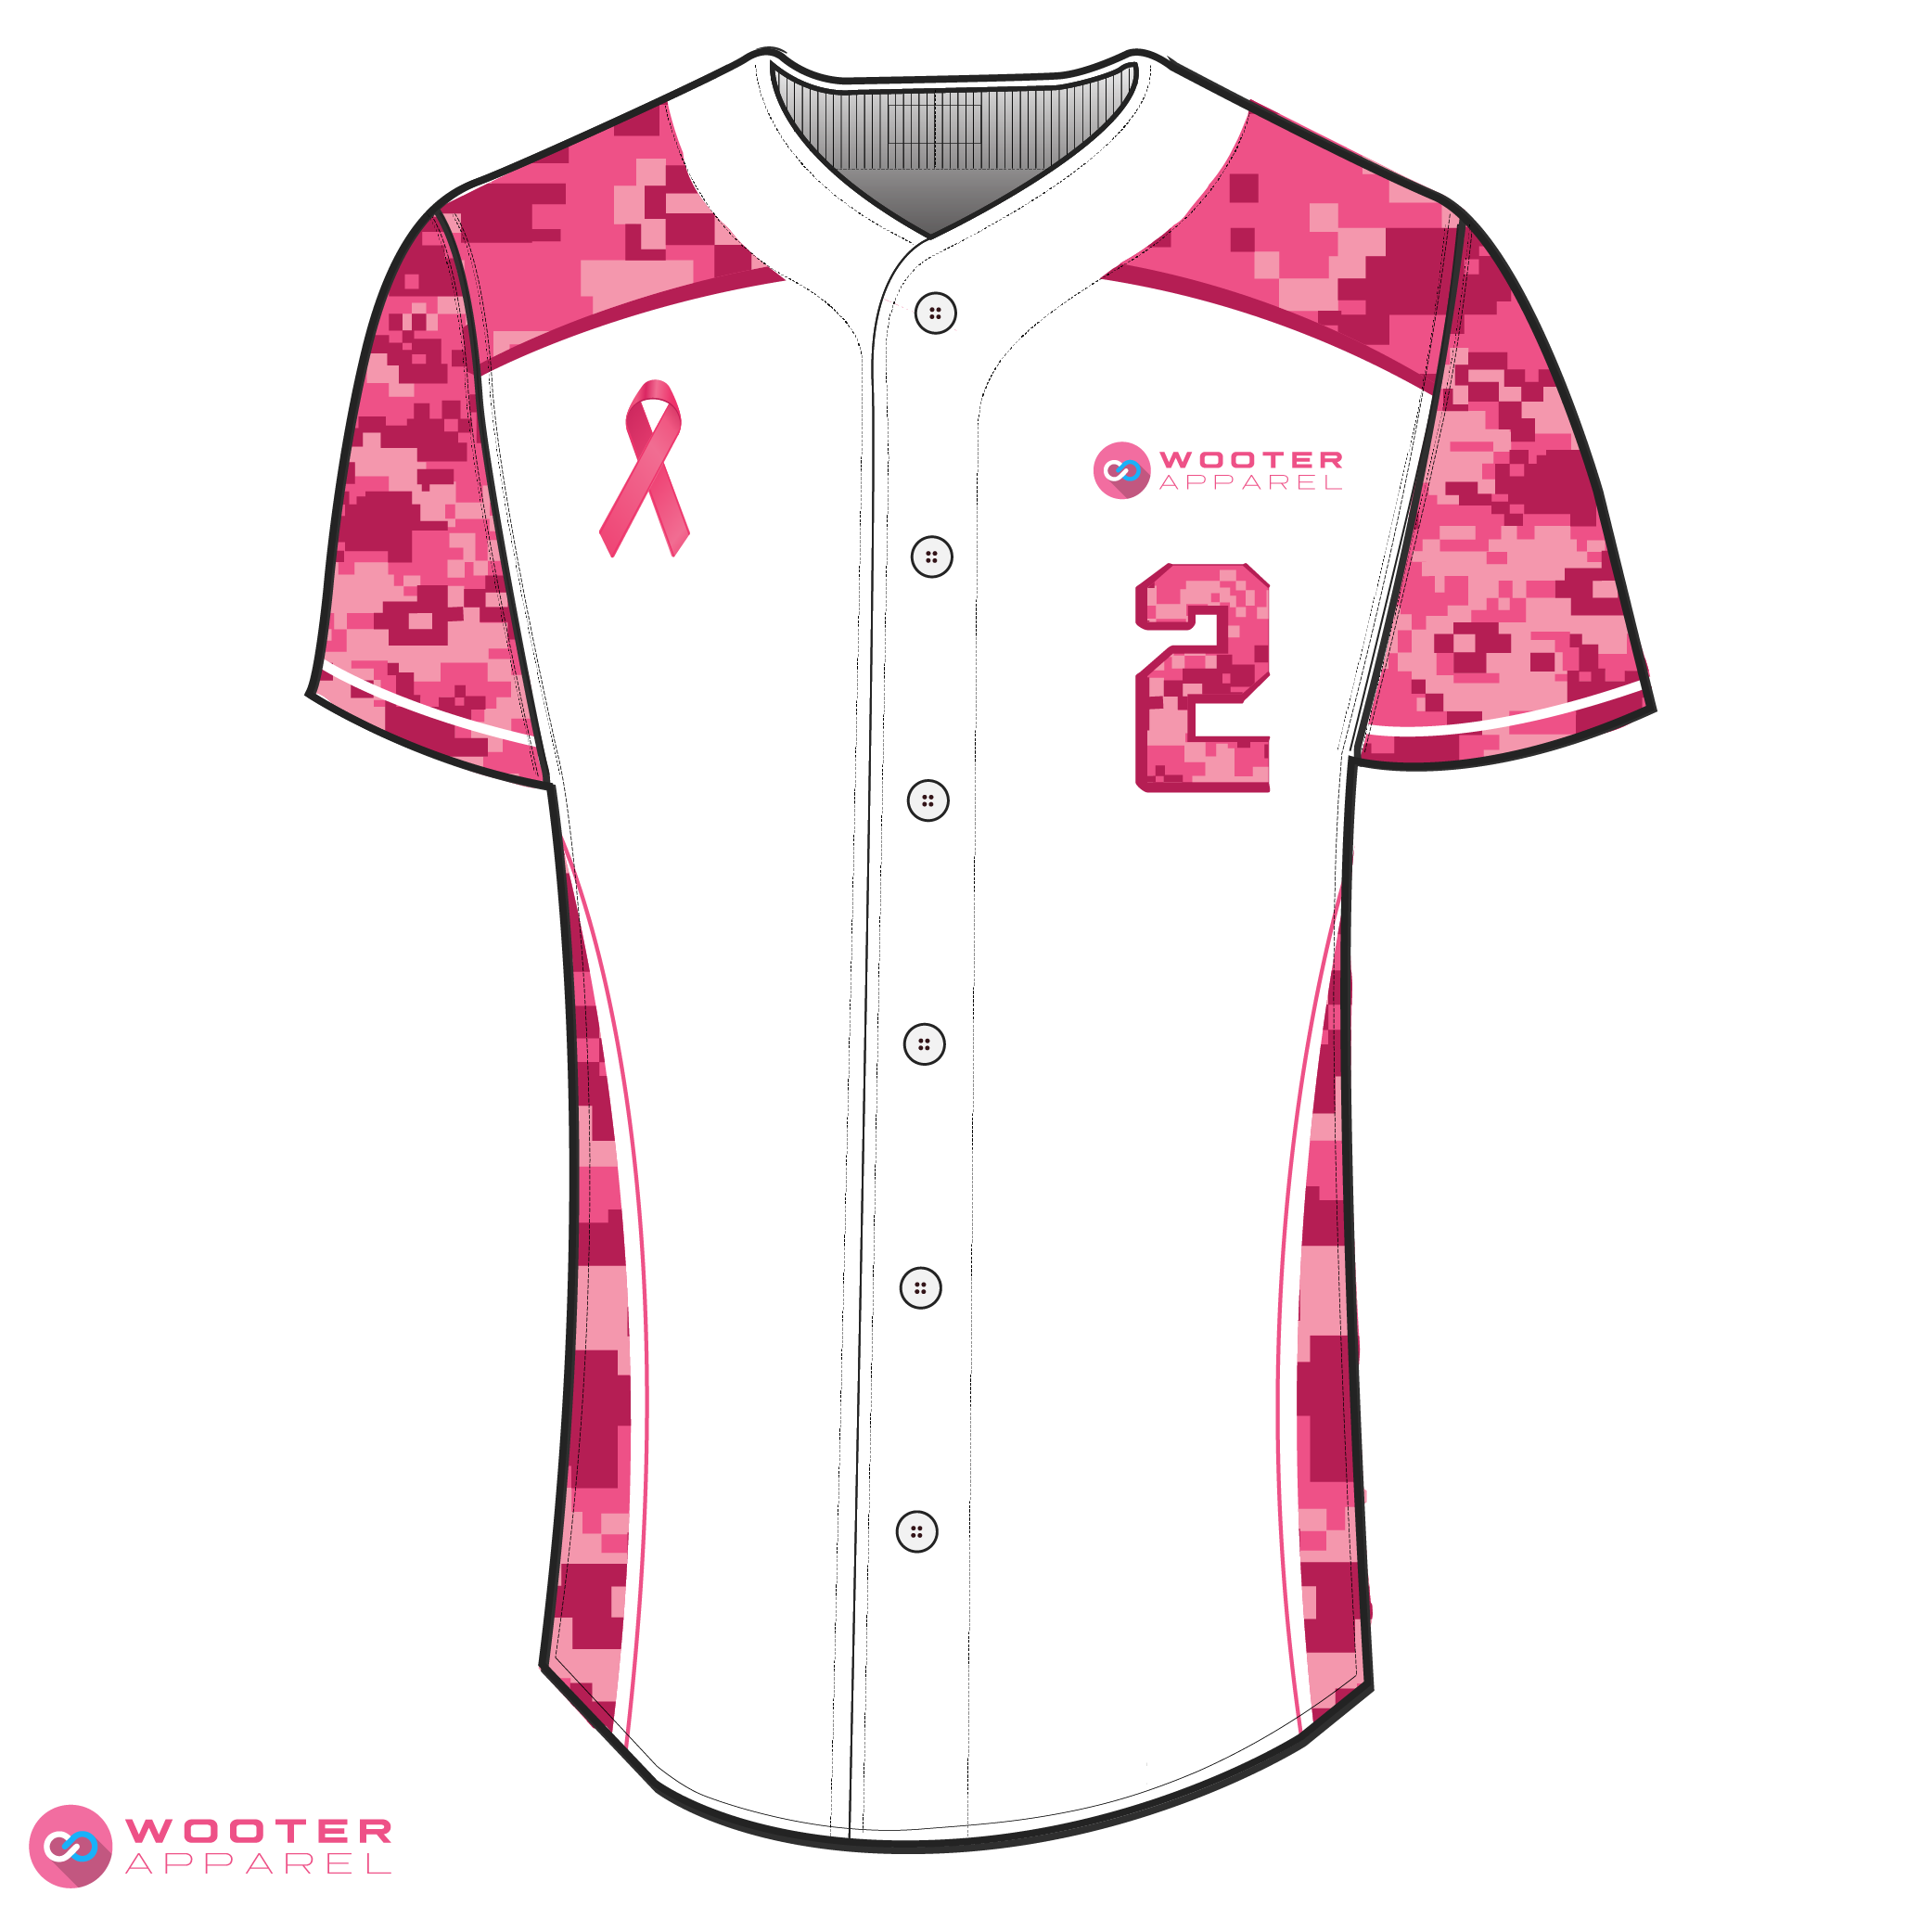 pink baseball jerseys